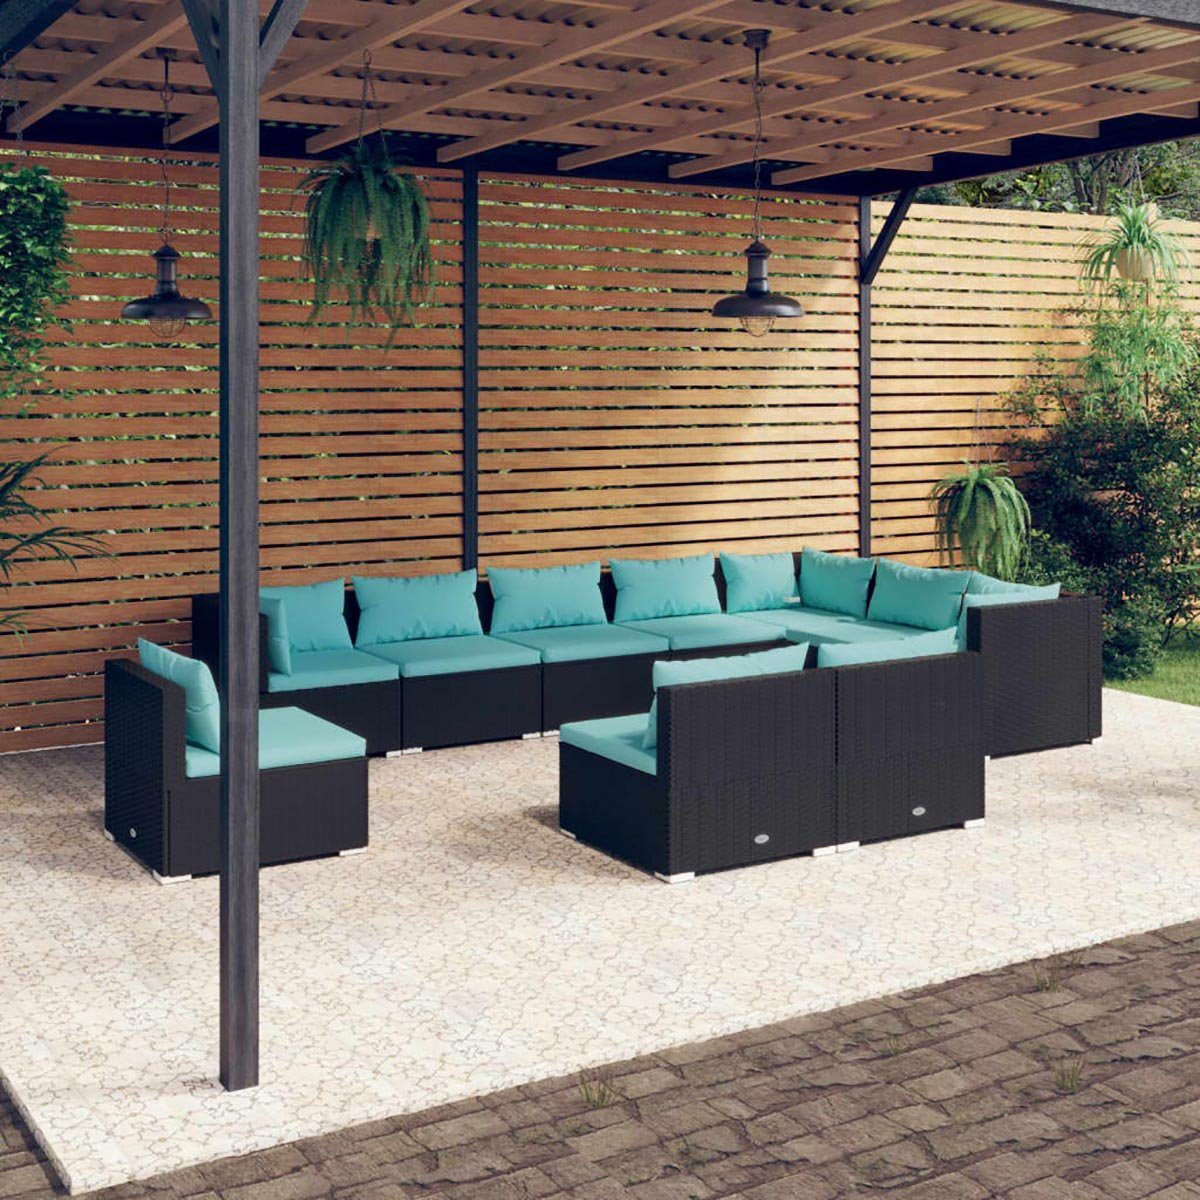 DOTMALL Big-Sofa 10-teiliges Garten-Lounge-Set mit Kissen Poly Rattan Schwarz